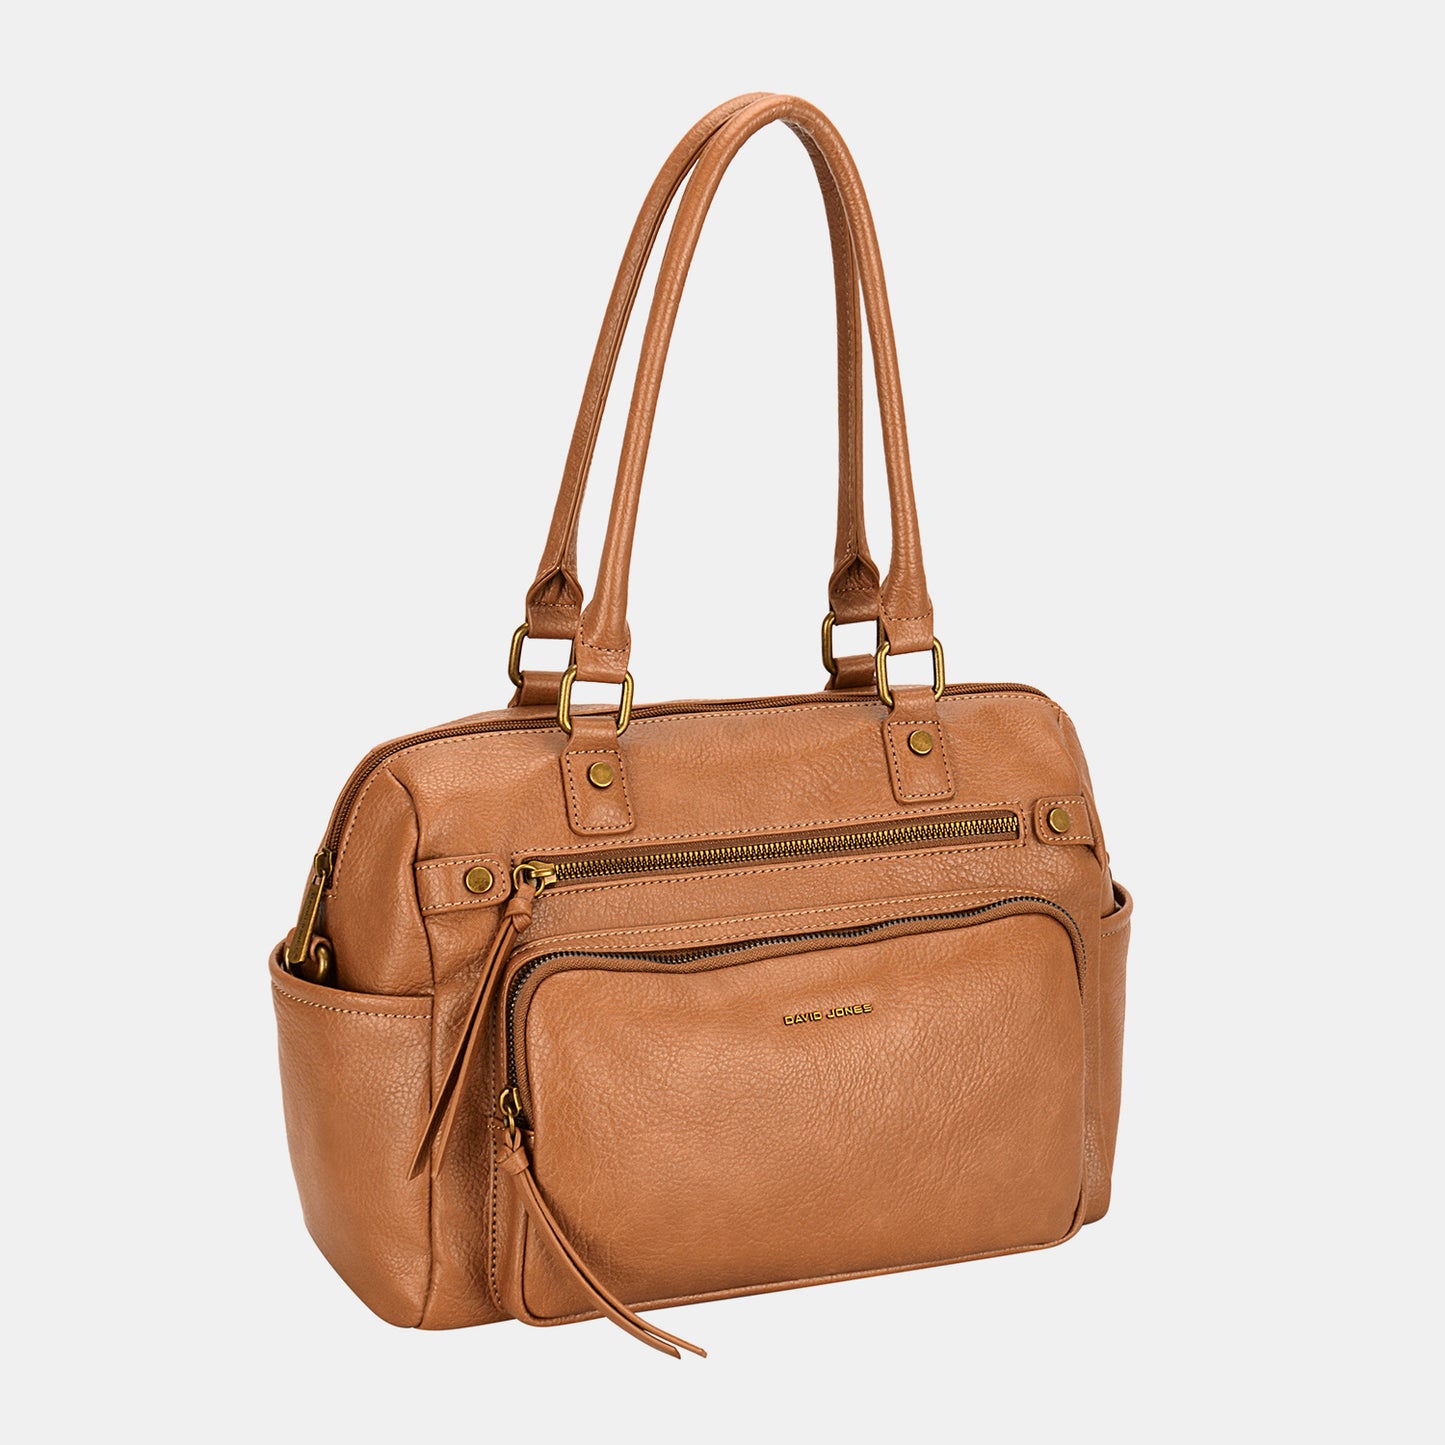 TEEK - Zipper Pull  Side Pocketed Handbag BAG TEEK Trend Cognac  